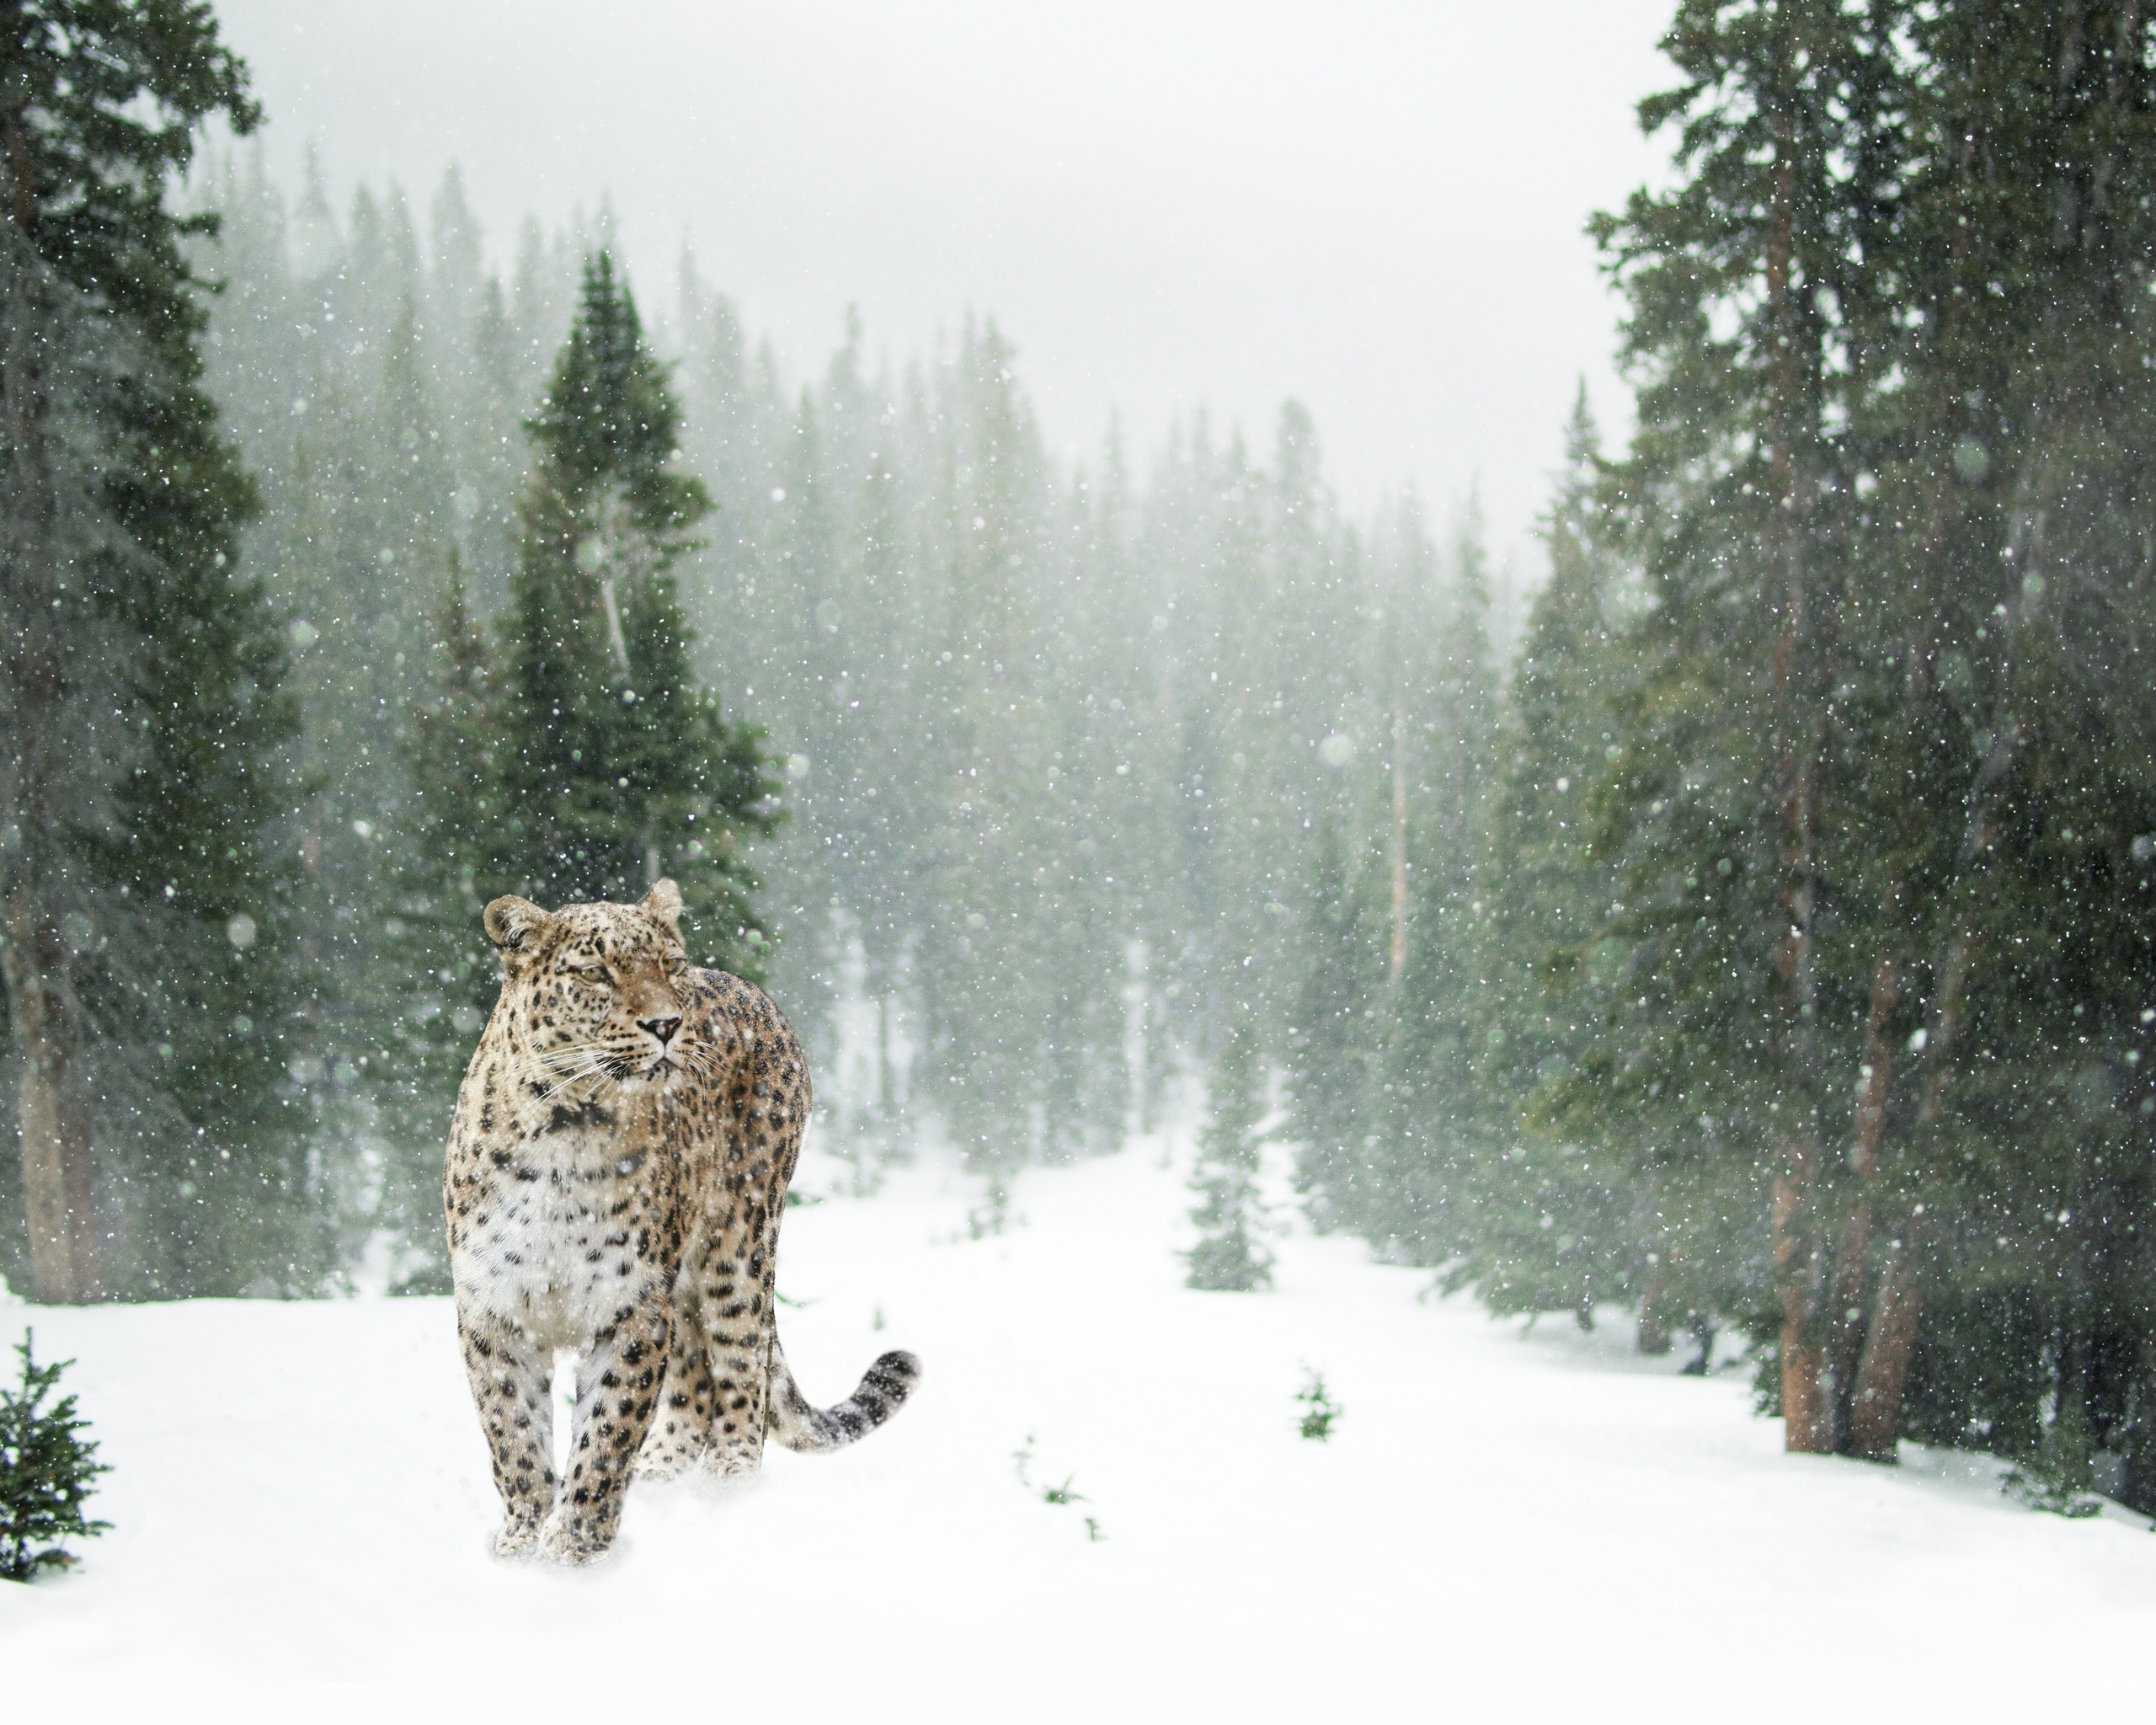 Картинка: Дальневосточный, леопард, зима, снег, лес, деревья, зелёные, поляна, хищник, кошка